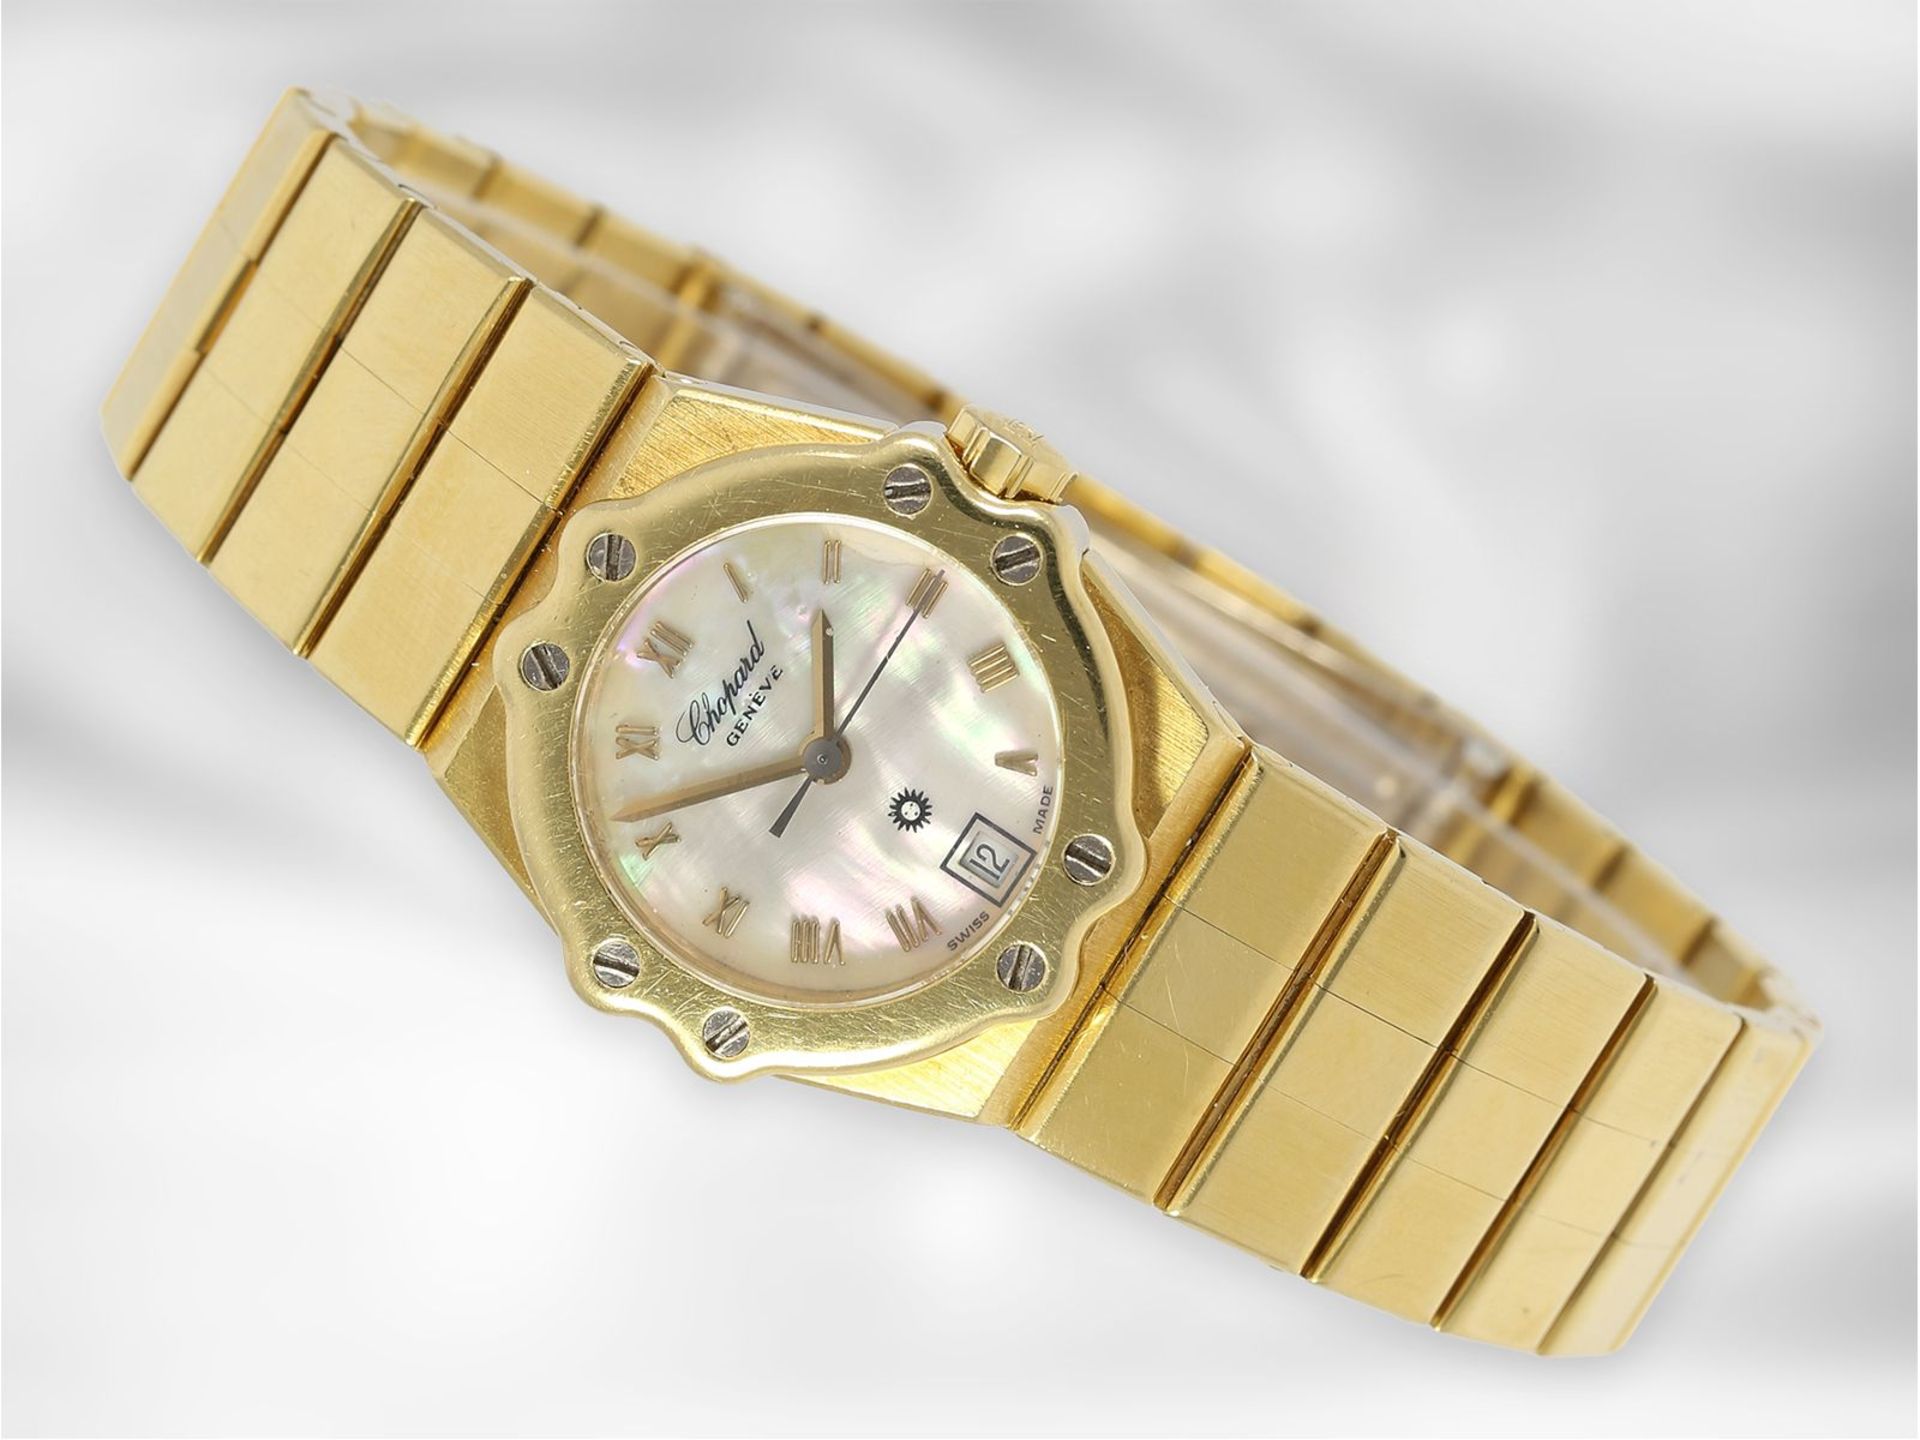 Armbanduhr: äußerst hochwertige und luxuriöse Damenuhr, Chopard "St. Moritz" in 18K Gold mit